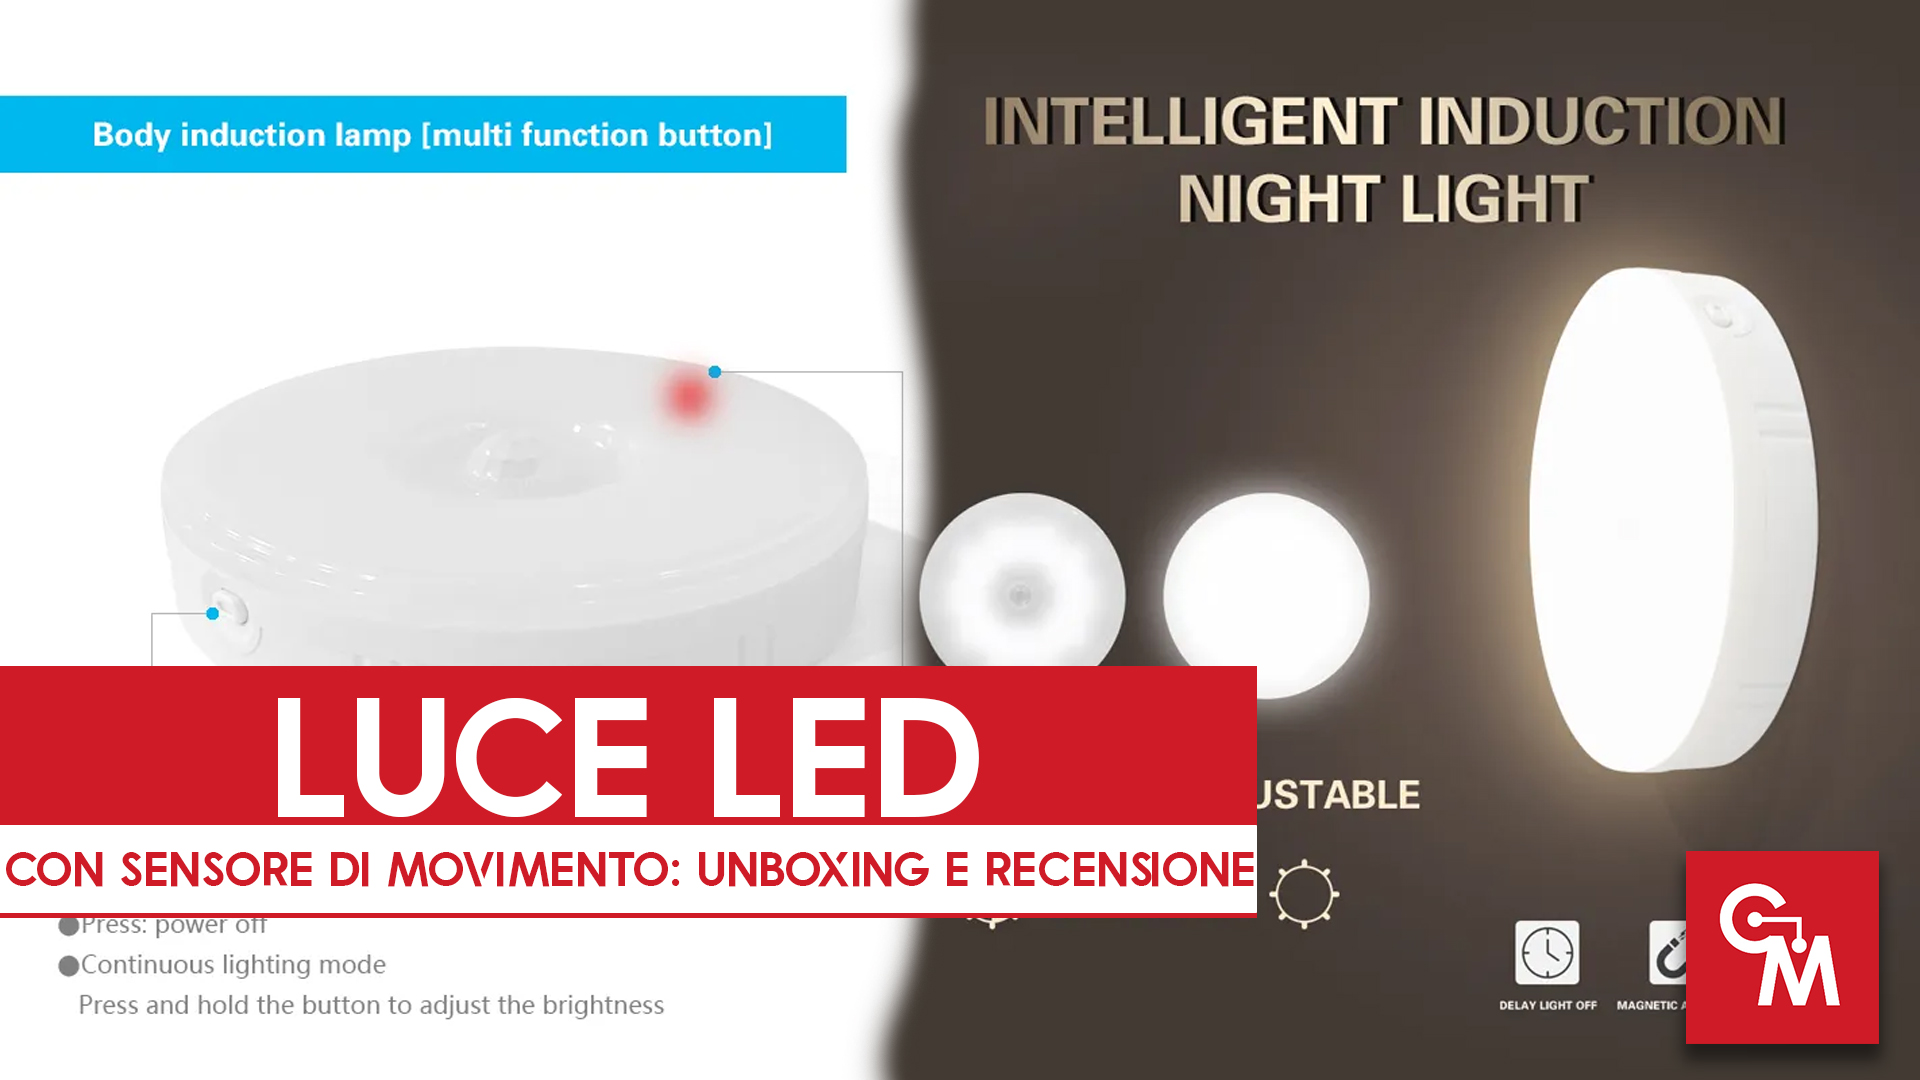 Luce LED con Sensore di Movimento: Unboxing e Recensione